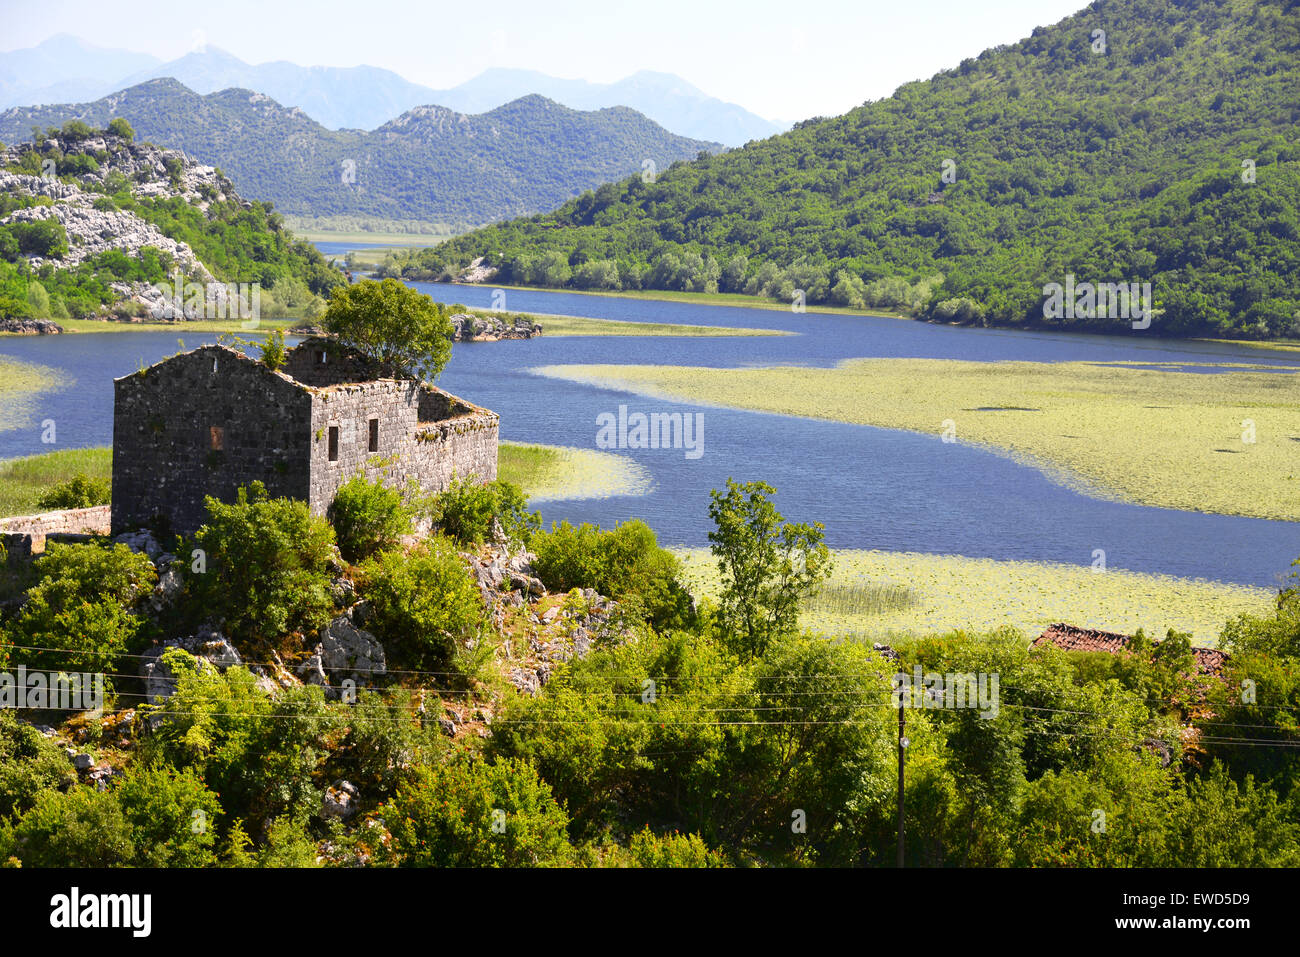 Karuc village on Lake Skadar, Montenegro, the largest lake in the Balkan Peninsula. National Park. Stock Photo